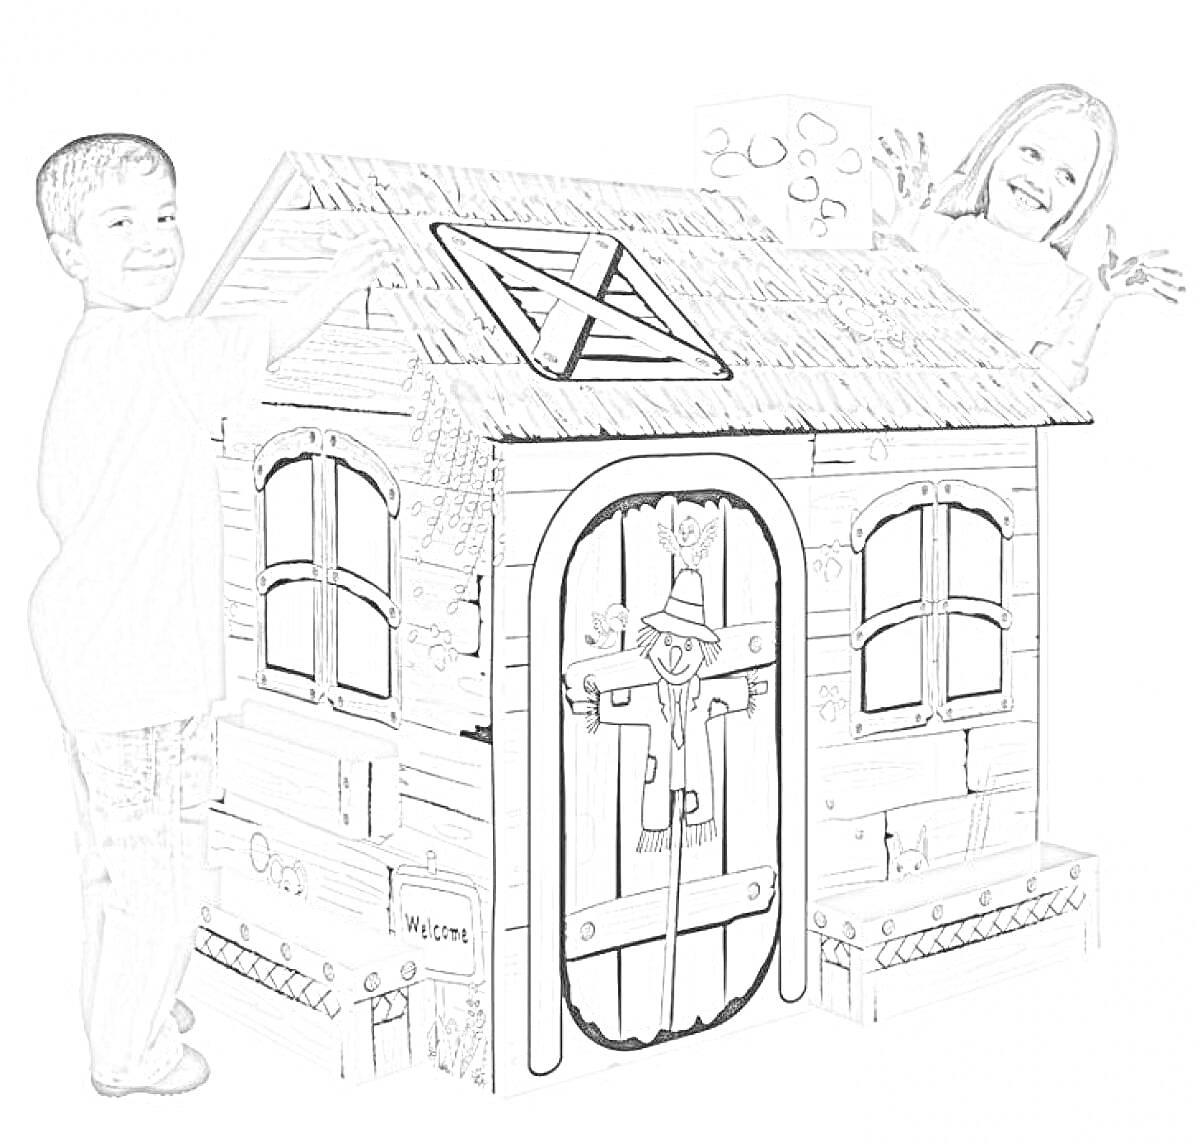 Раскраска Раскраска картонного домика с детьми, двумя окнами, дверью с рисунком кота, чердачным окном и забором